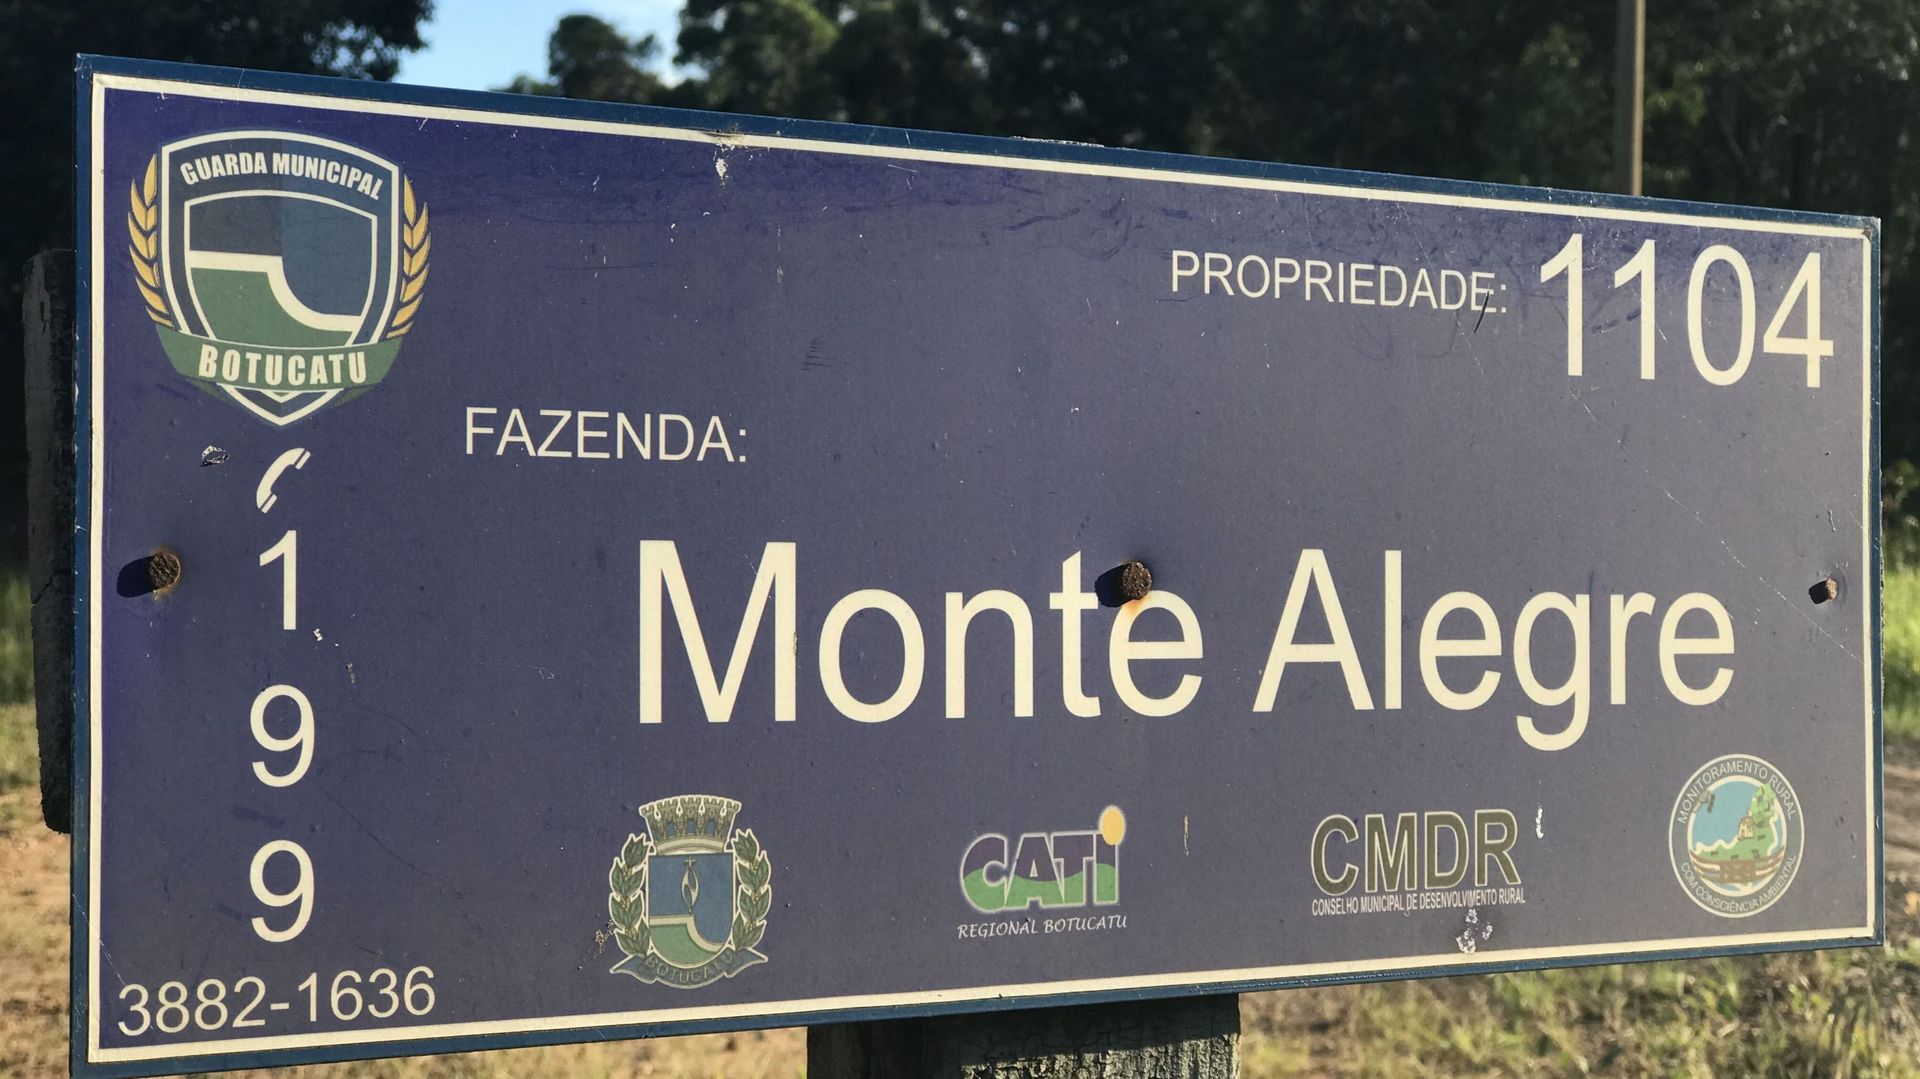 La "fazenda" de Monte Alegre, ce qui signifie "la ferme" en portugais. C'est le terme utilisé au Brésil pour désigner les grands domaines agricoles.  